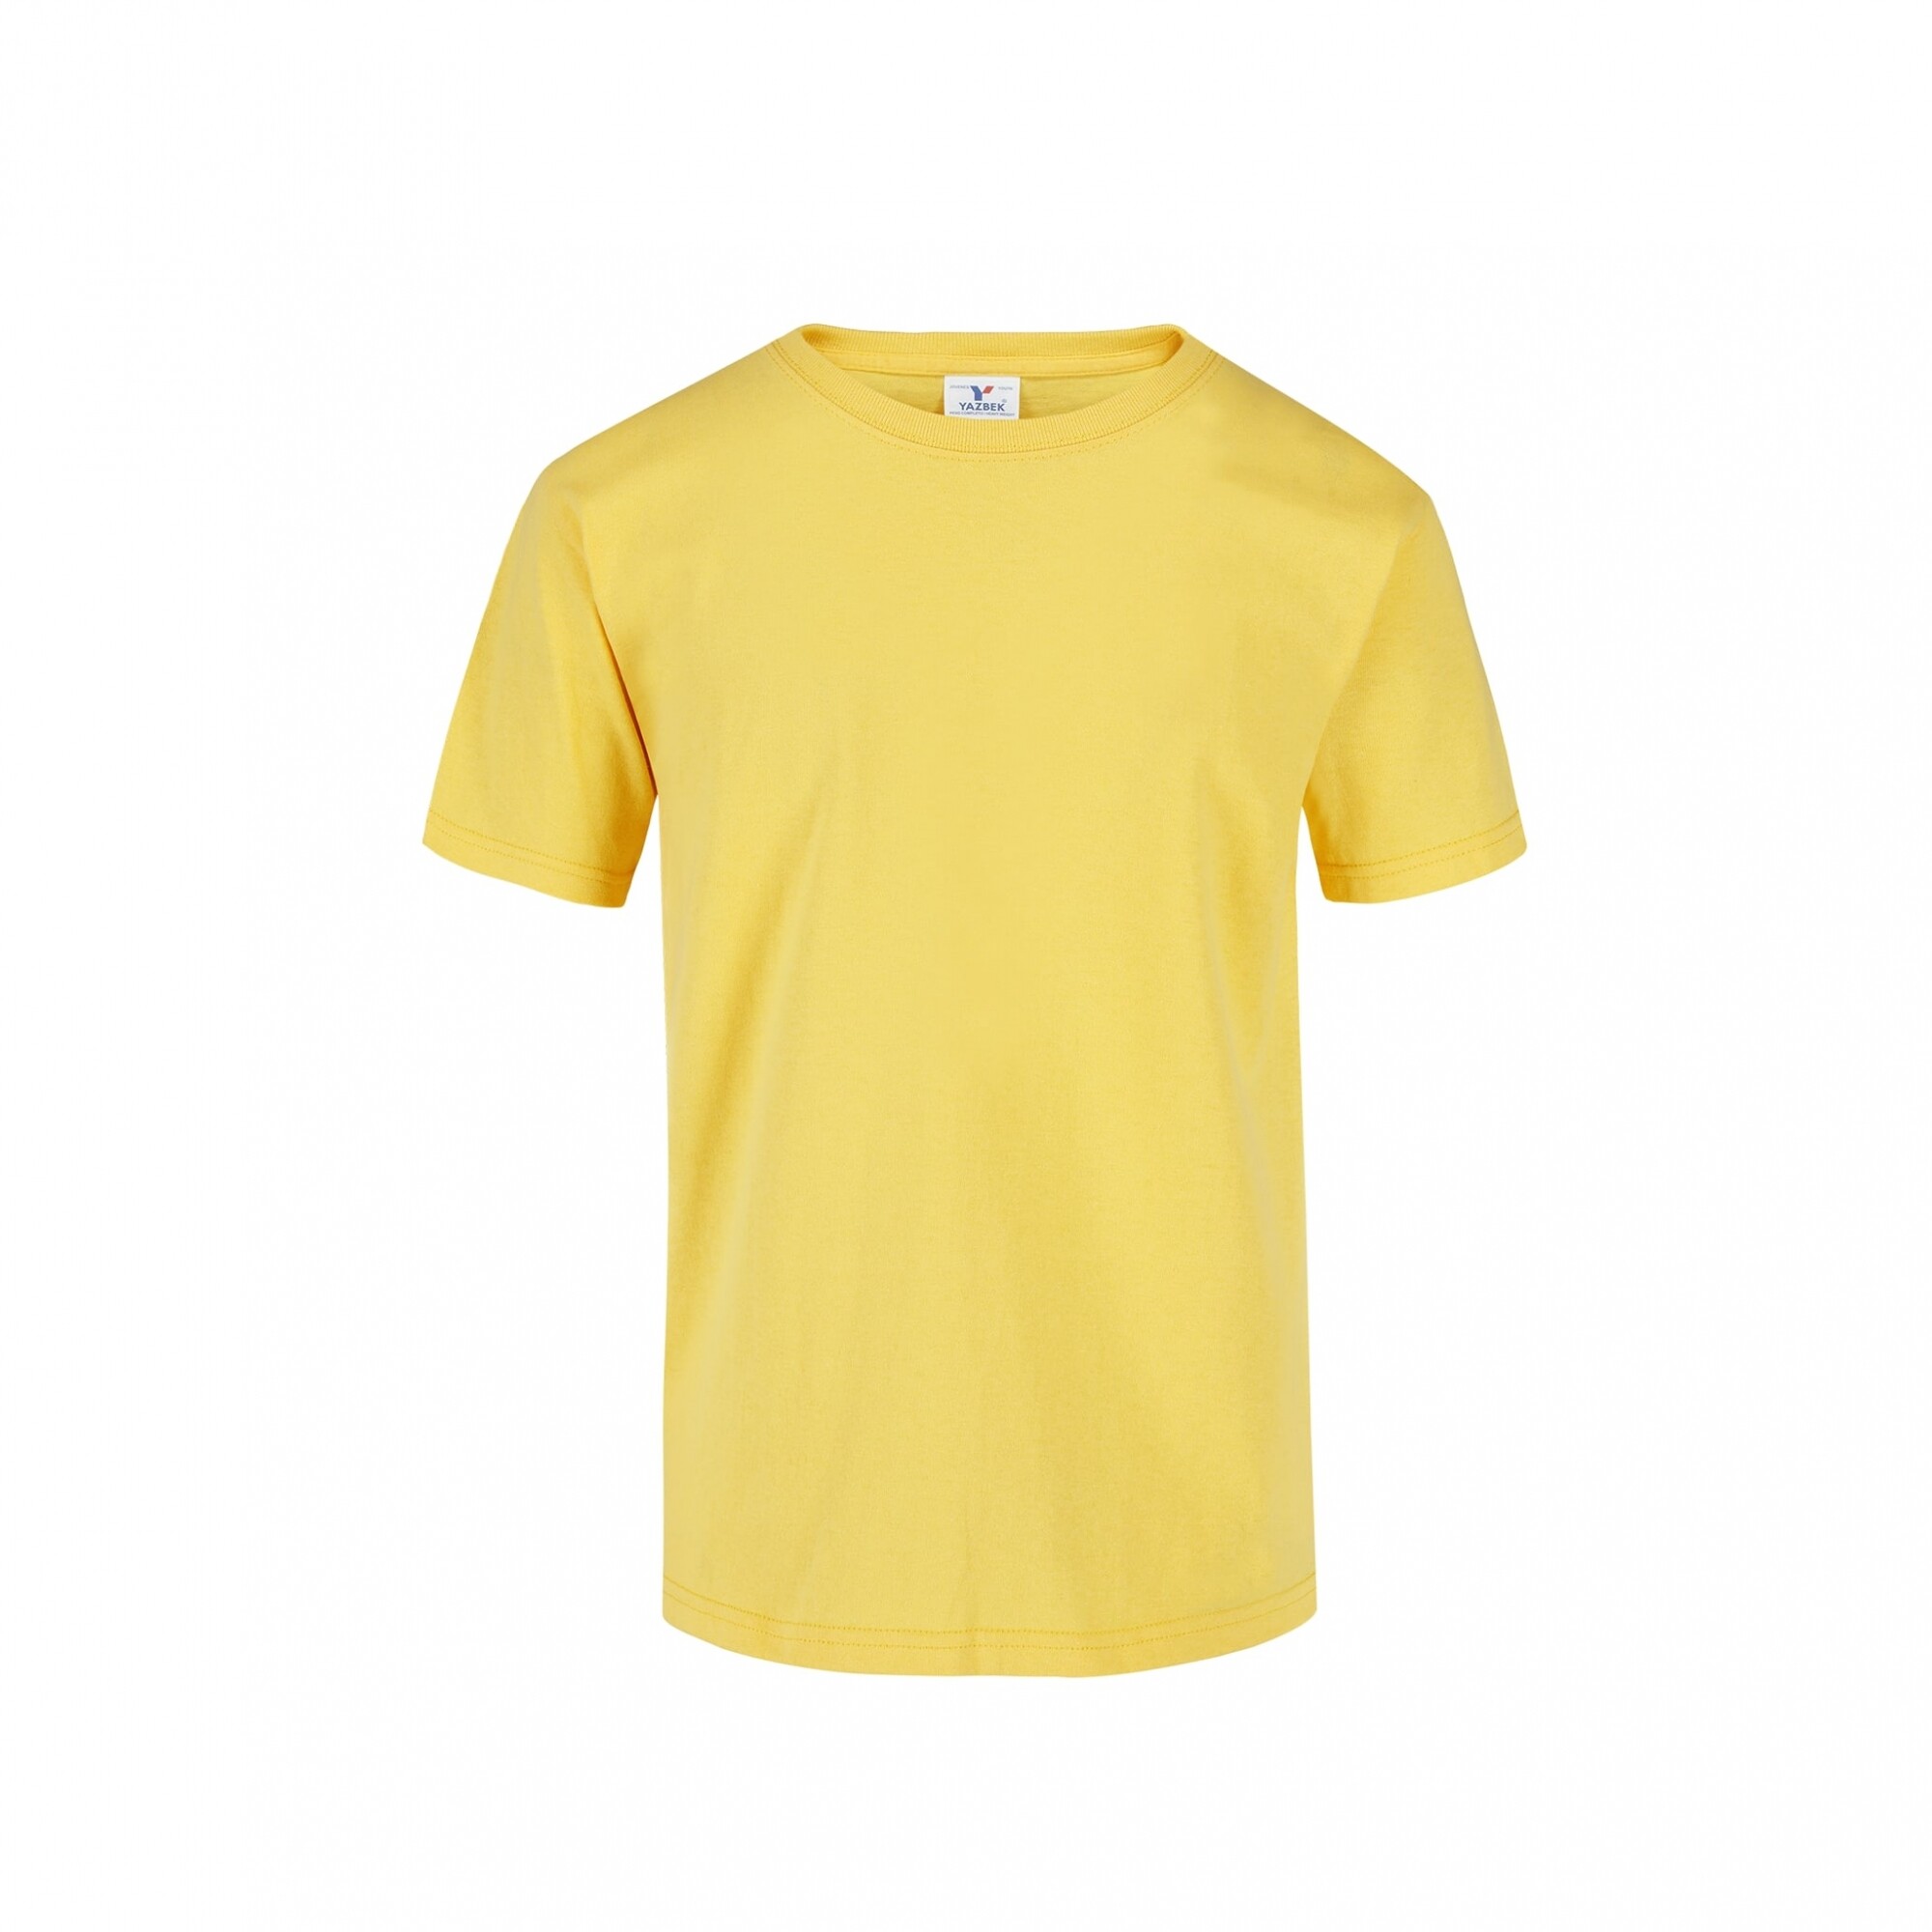 Camiseta a la base niño - Amarillo canario — Indiewears